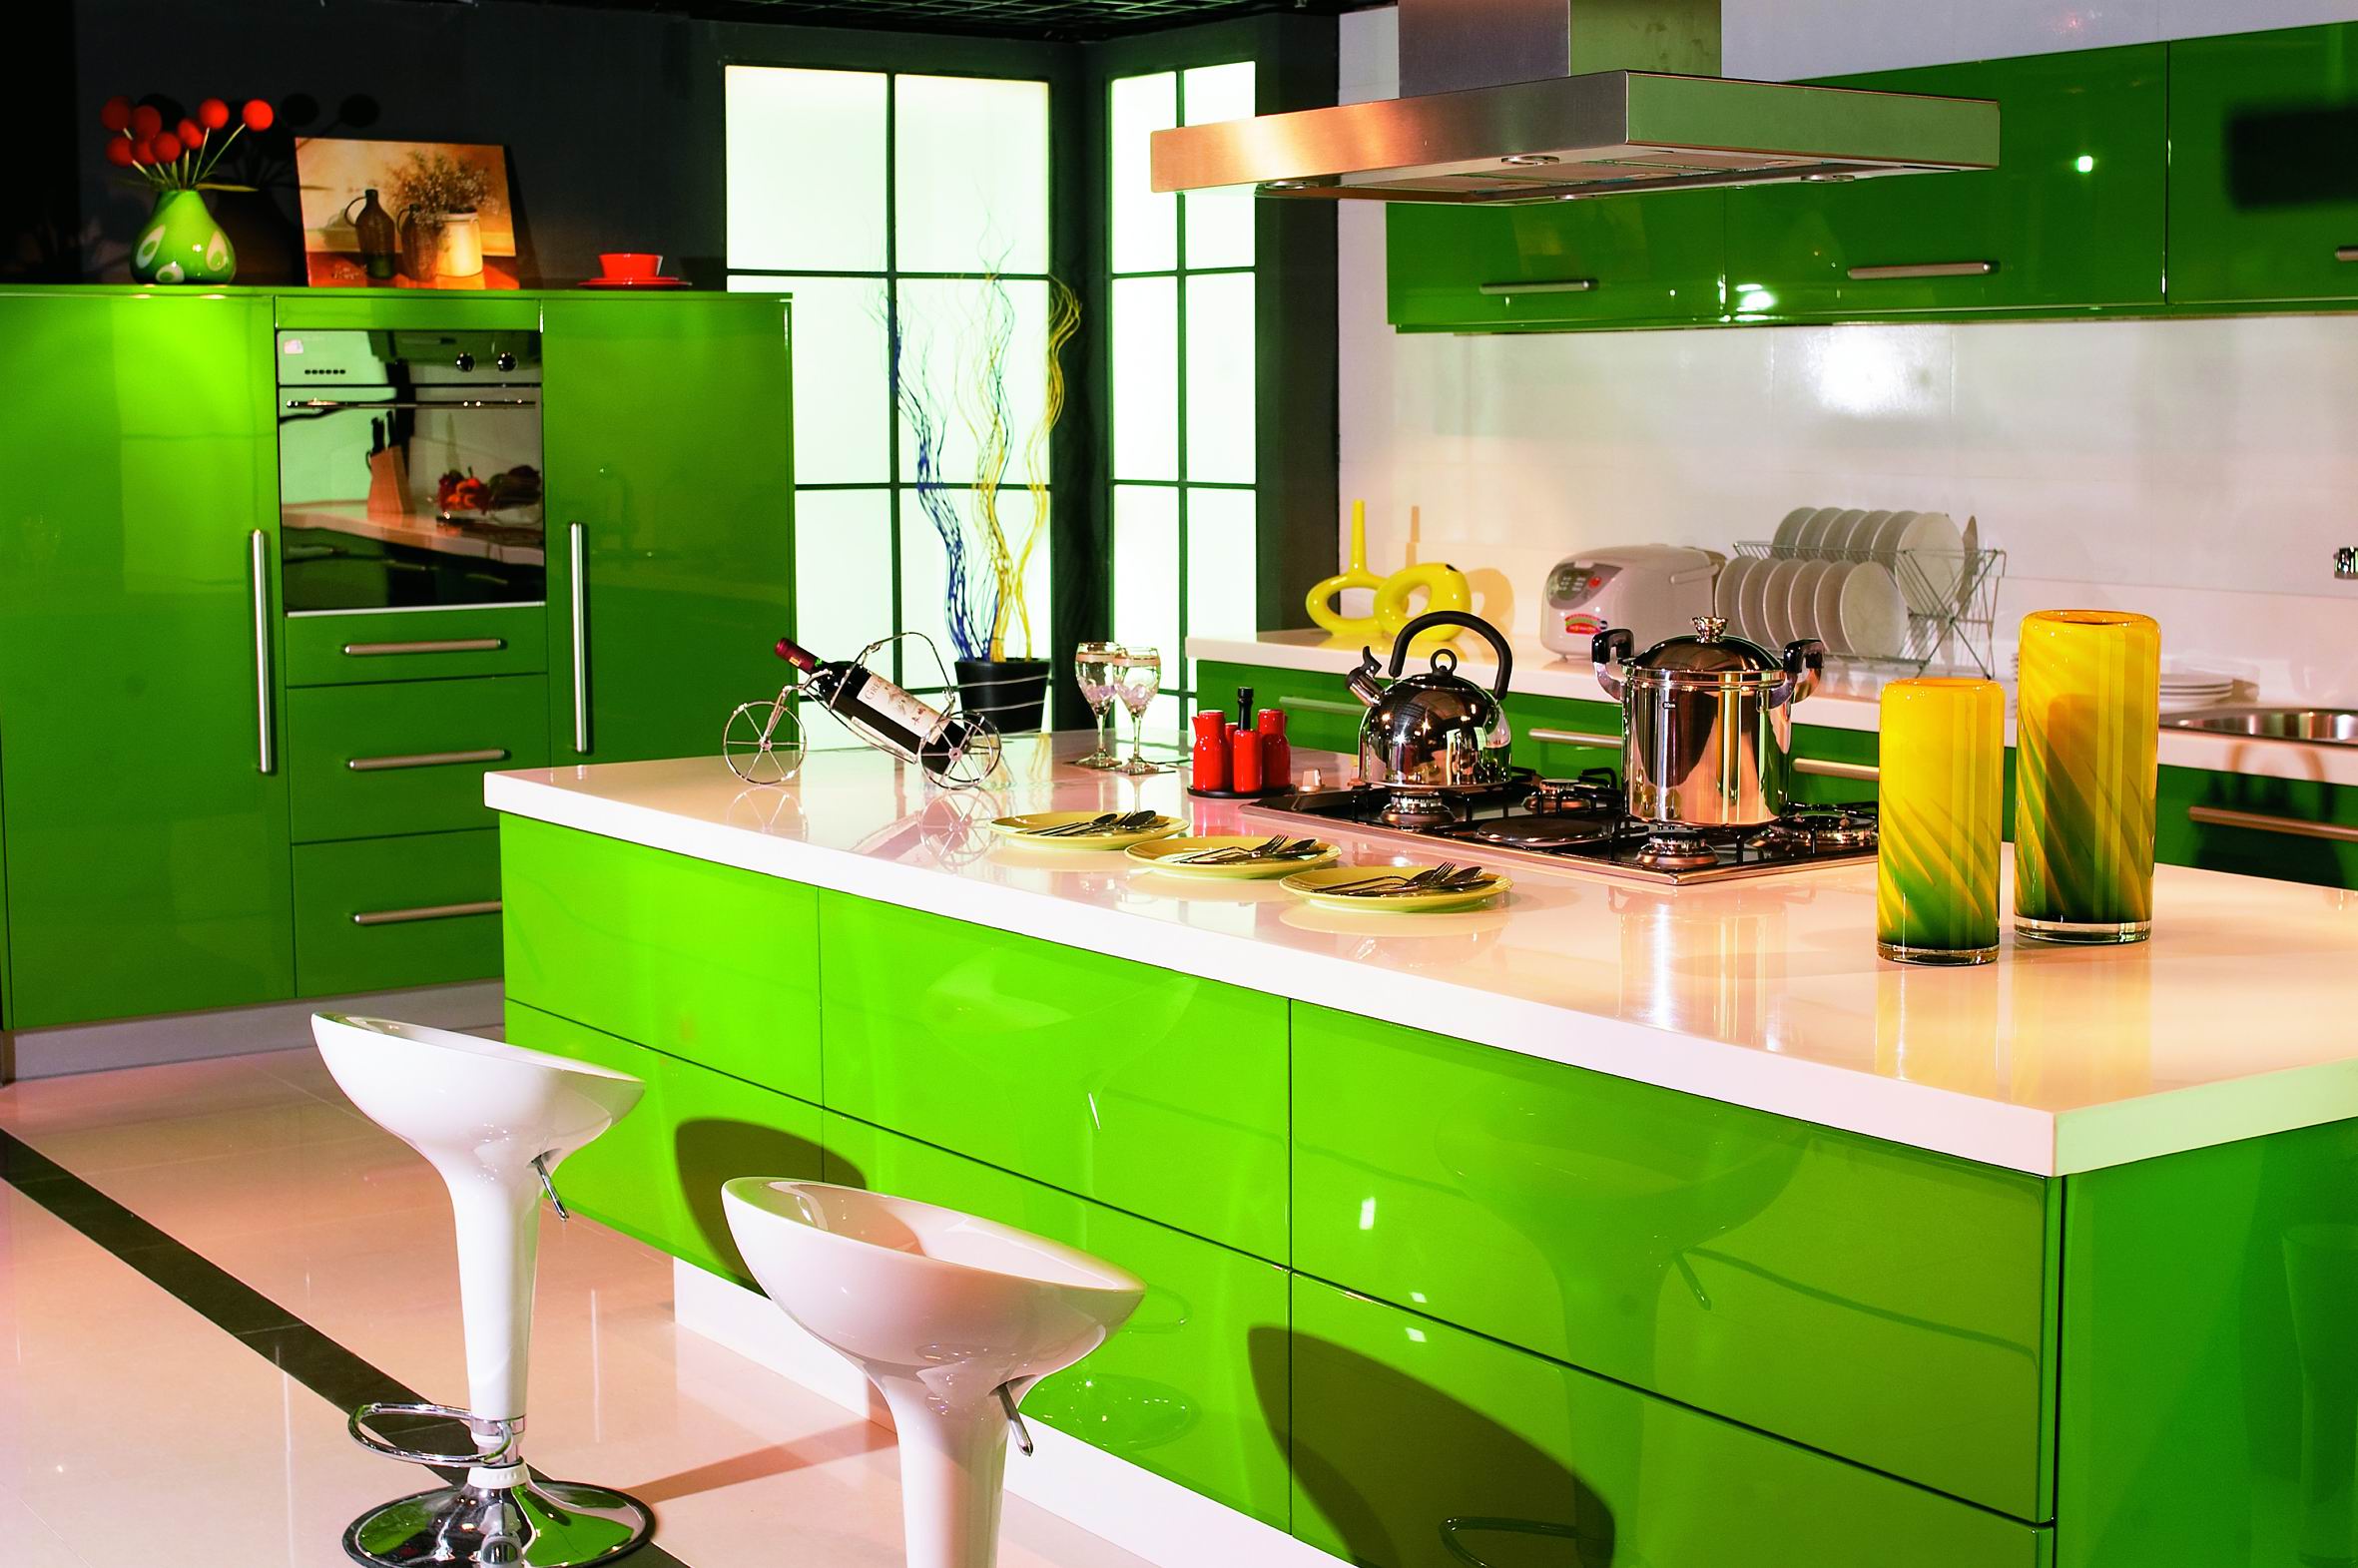 好太太整体厨房,绿色厨房的标准! -绿色空间123 -搜房博客